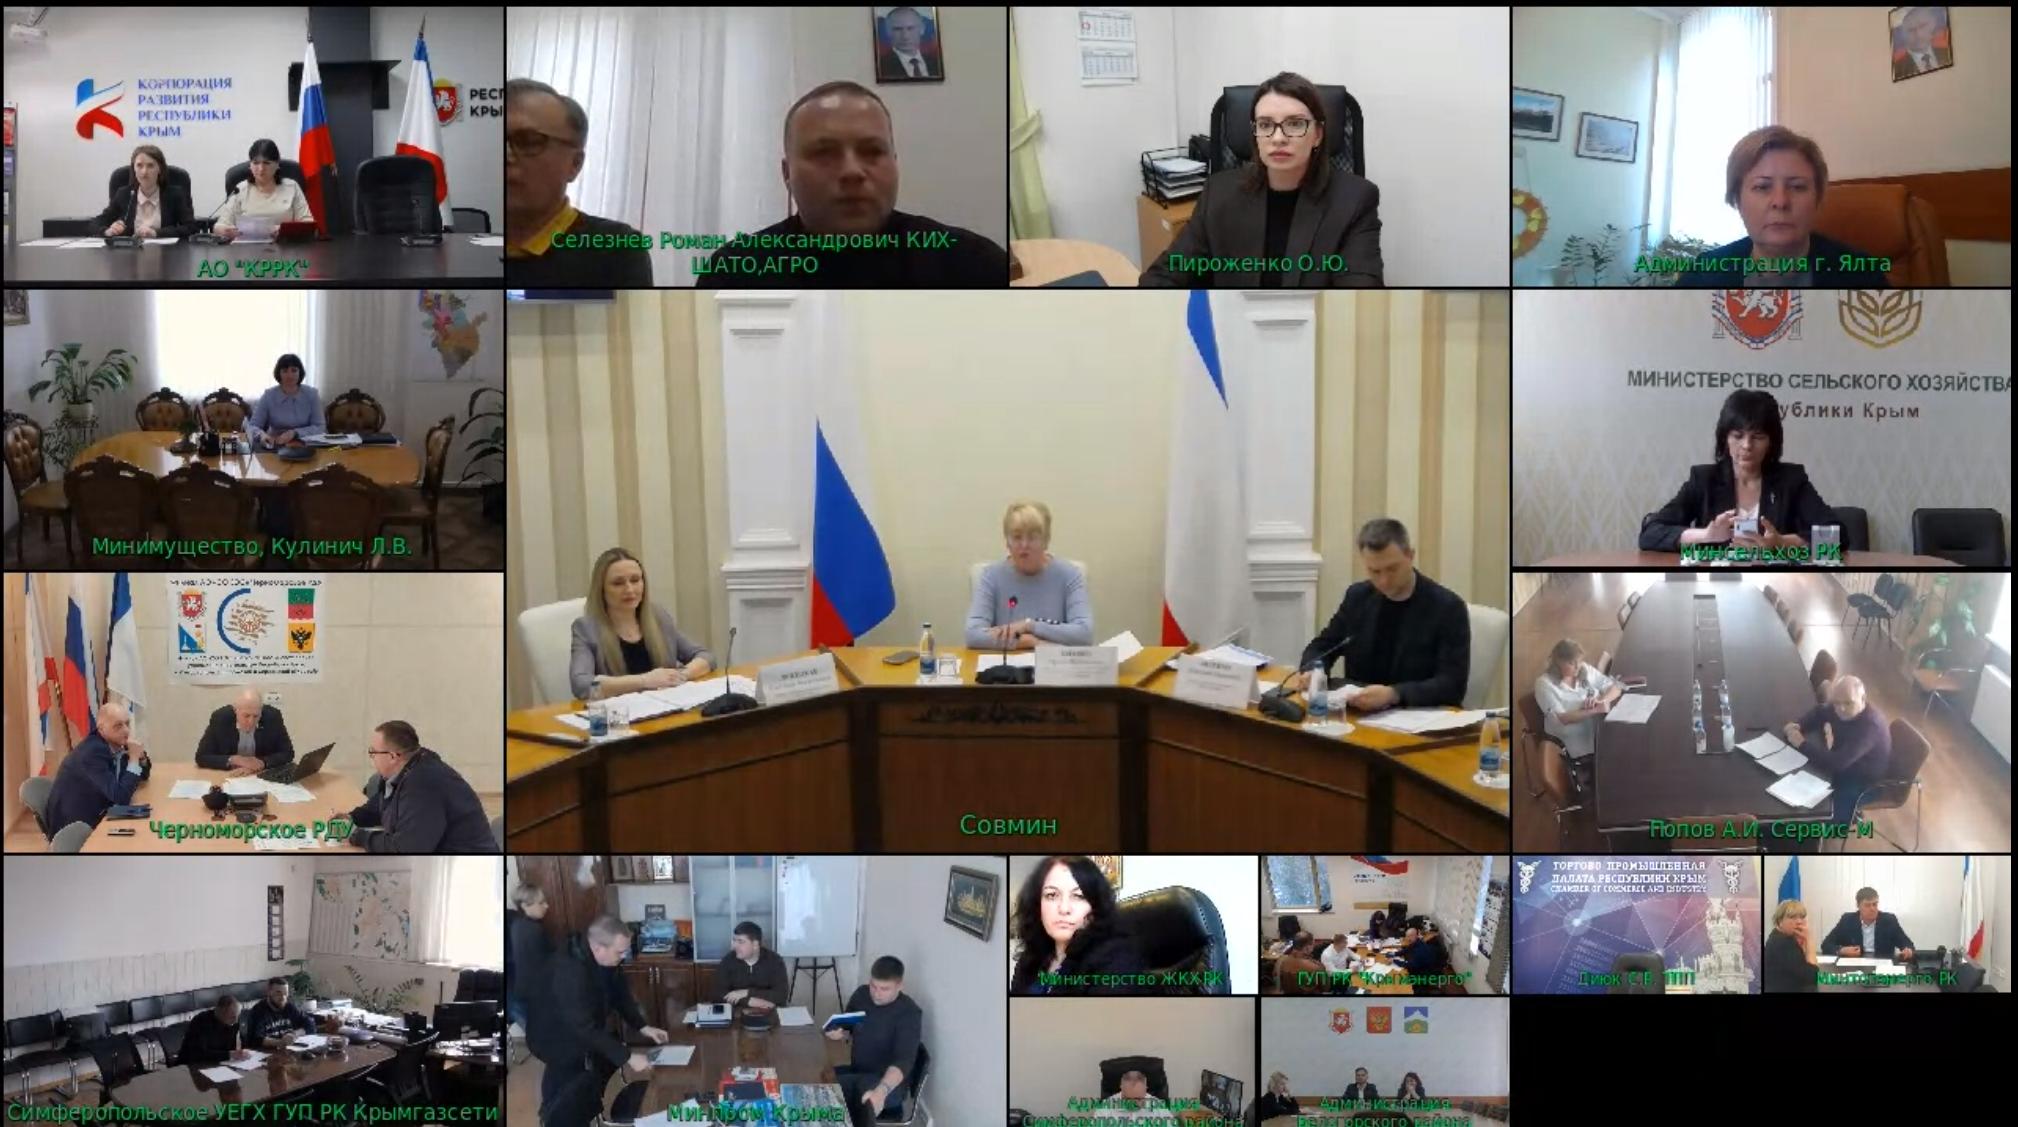 Дирекция приняла участие в заседании Инвестиционного комитета Республики Крым